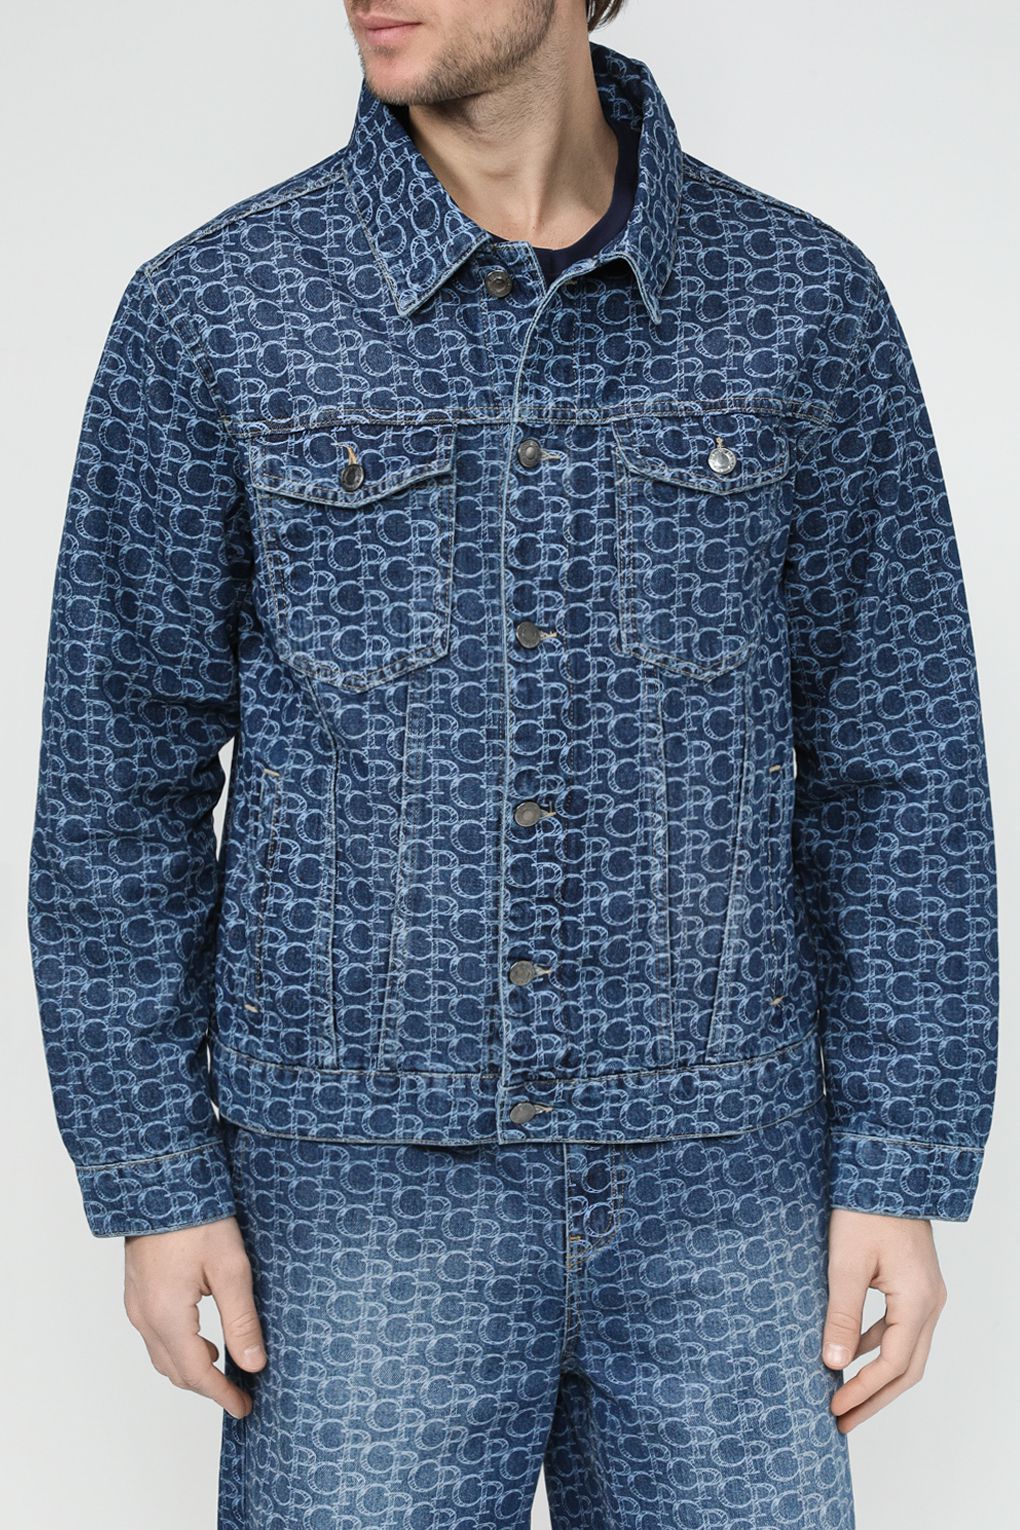 Джинсовая куртка мужская COLORPLAY CP24029348-105 синяя 50 RU